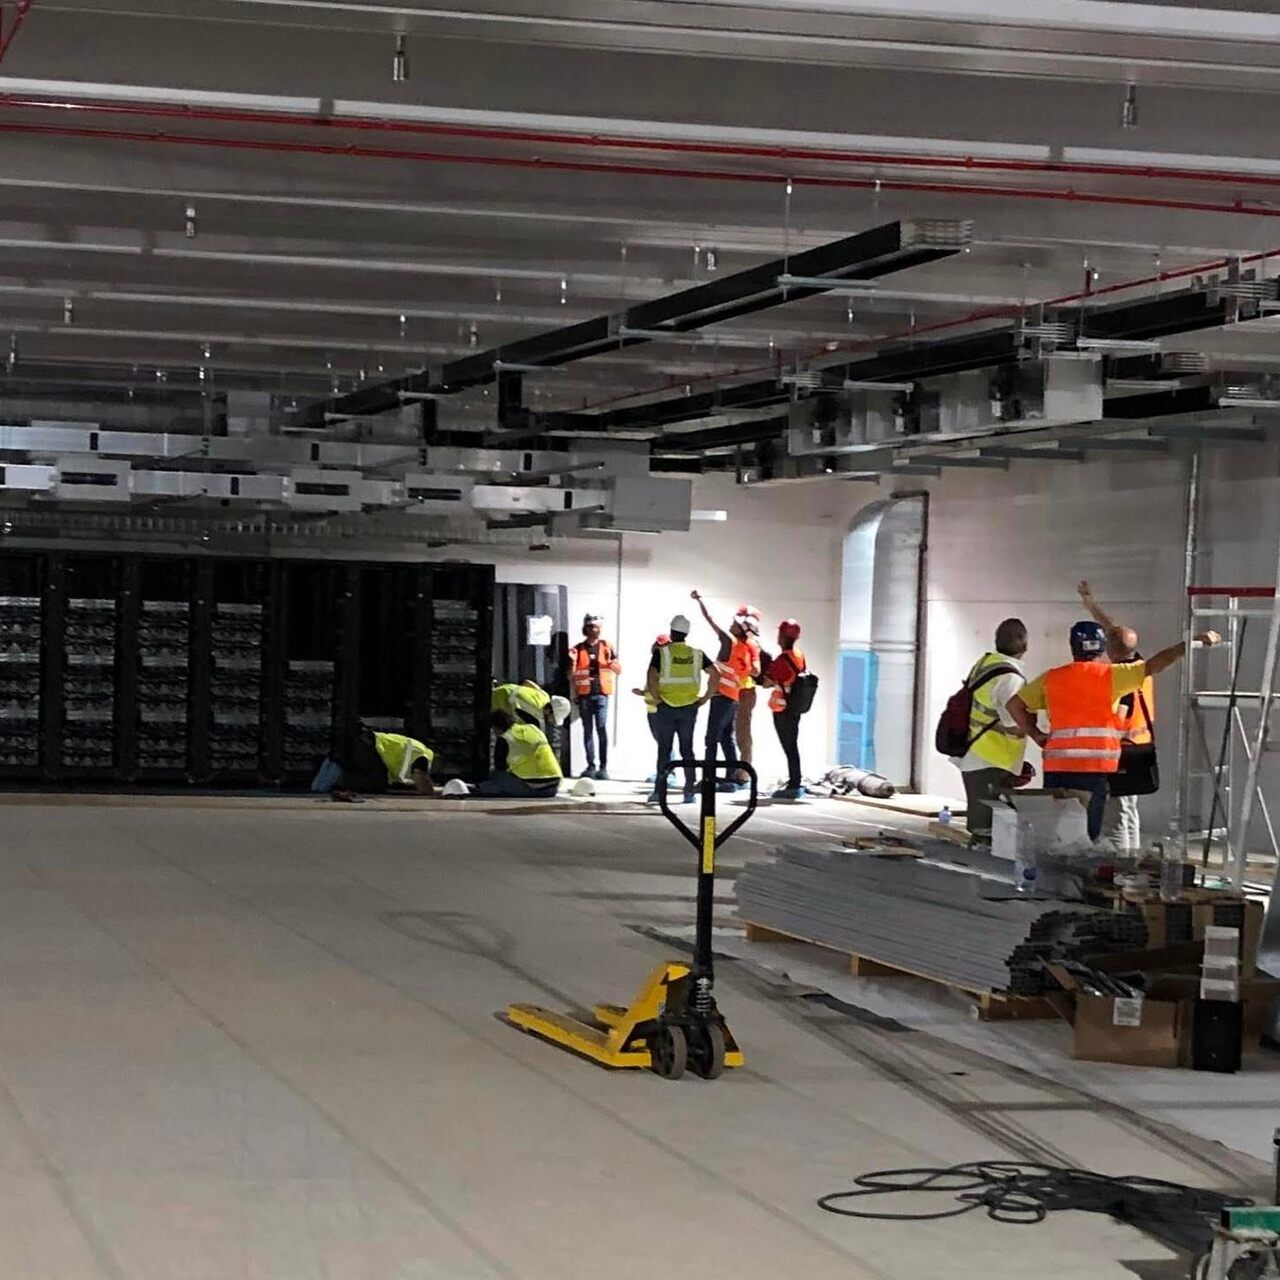 Il “data center” di Bologna destinato al supercomputer Leonardo